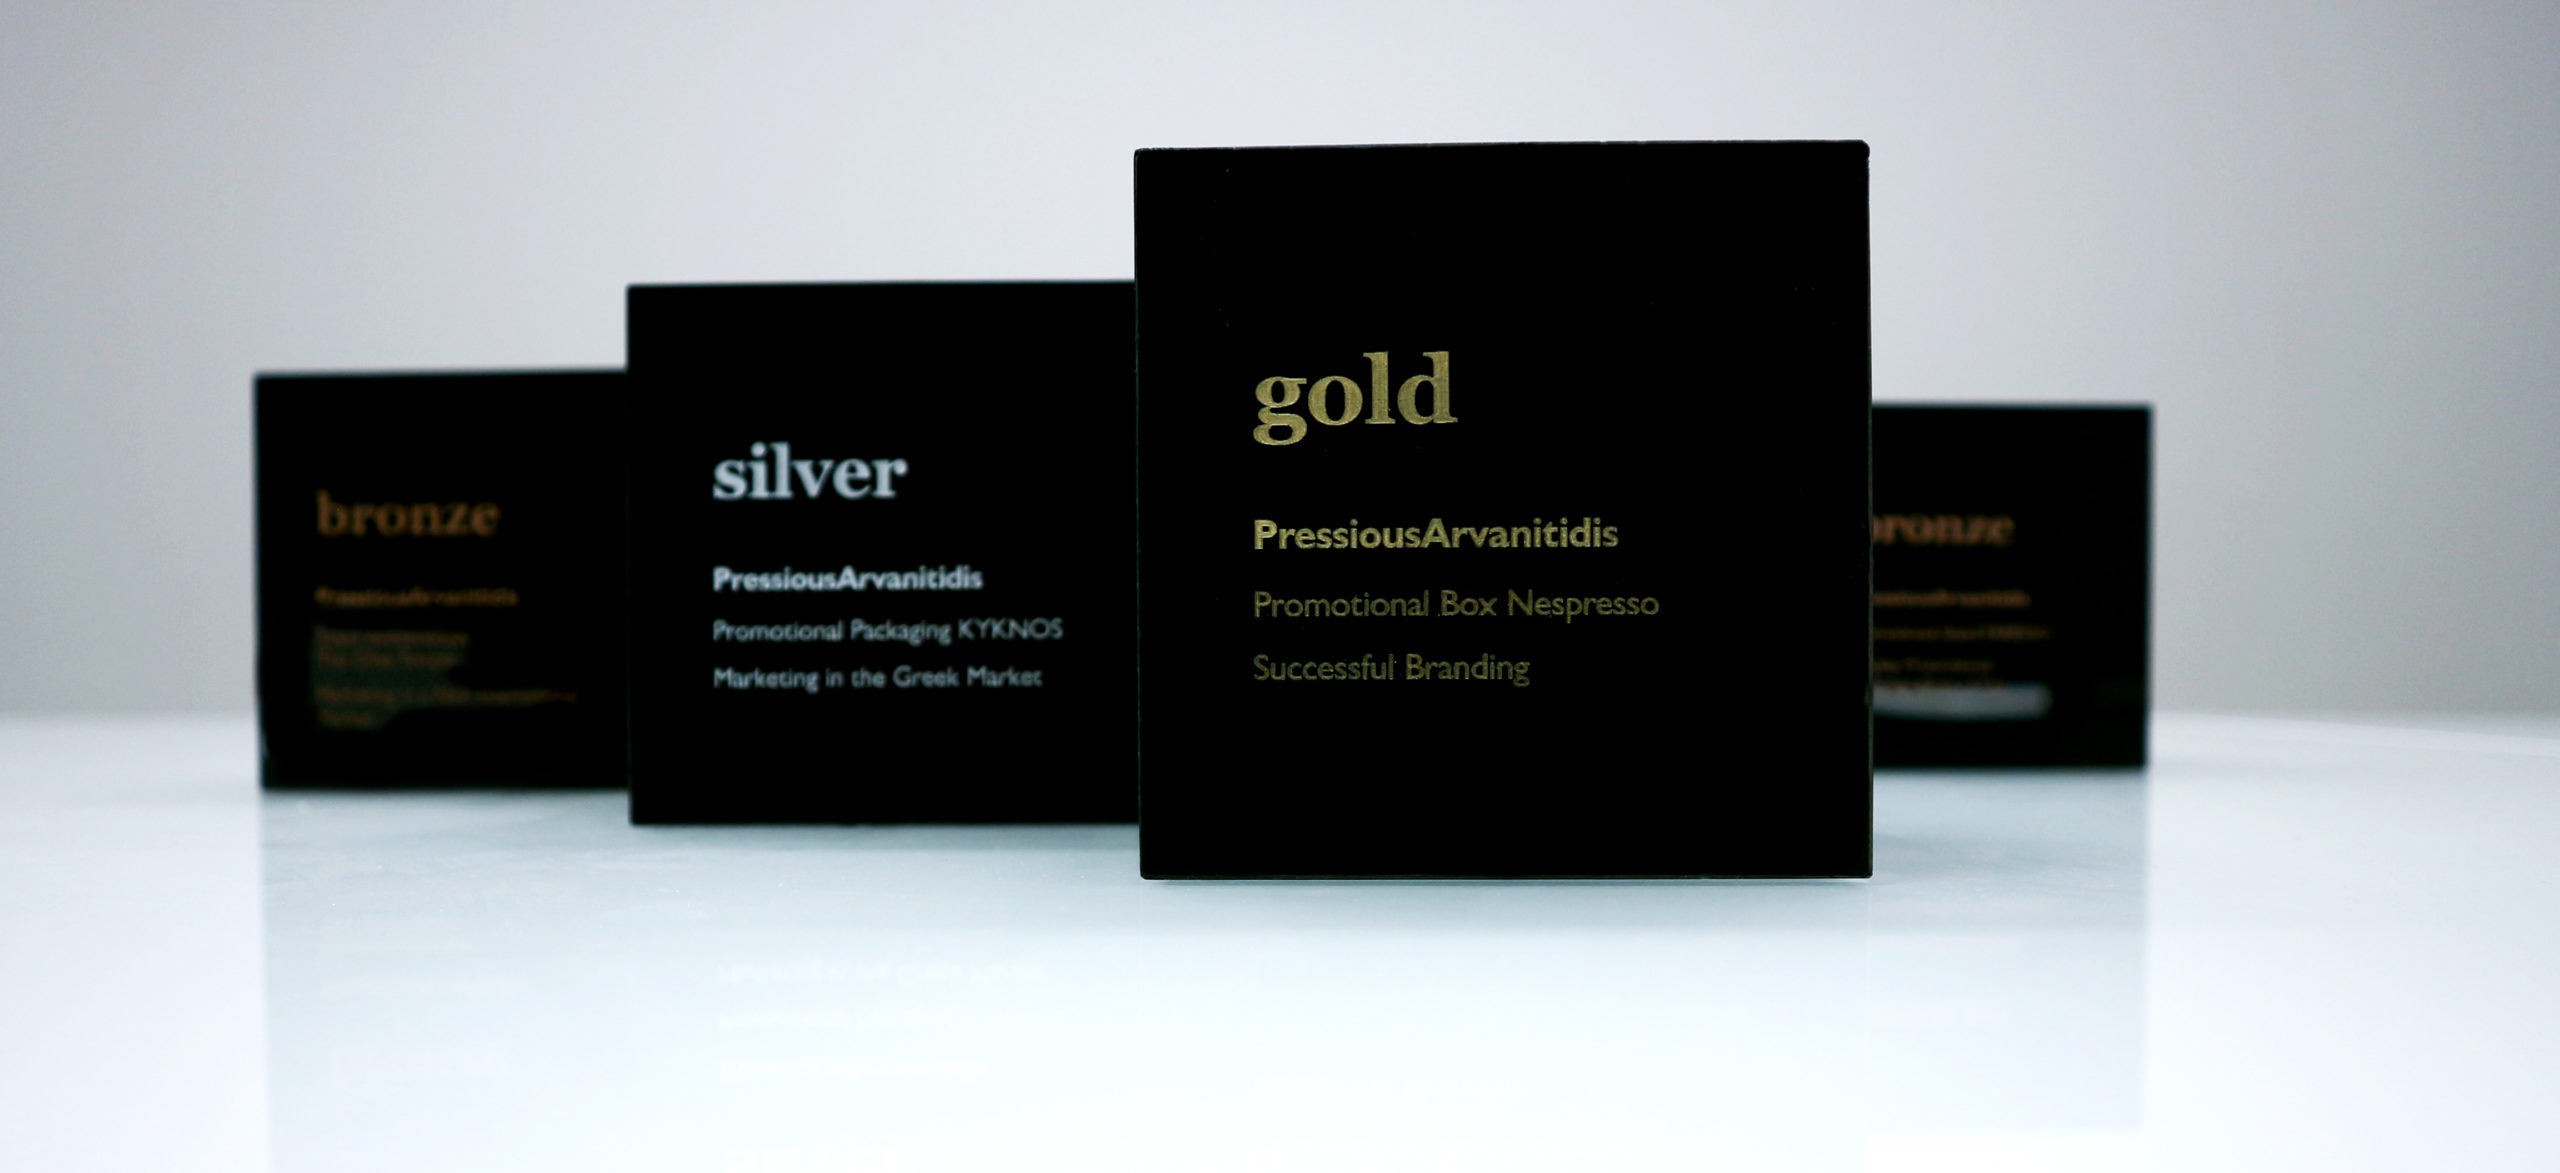 PressiousArvanitidis won 4 awards at the Packaging Awards 2021